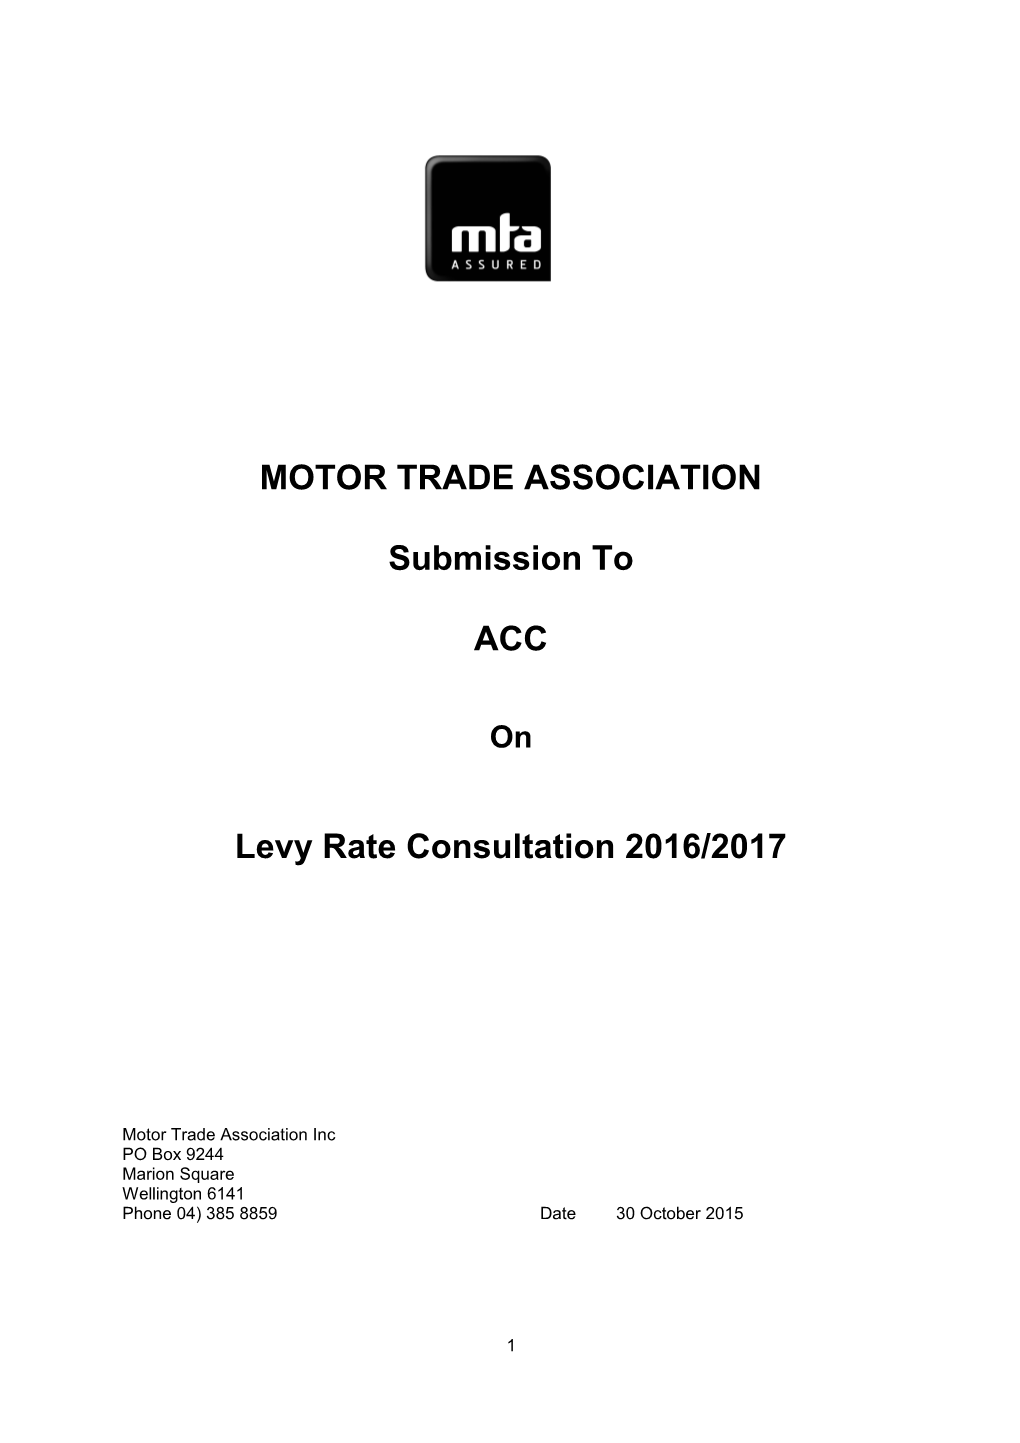 Motor Trade Association